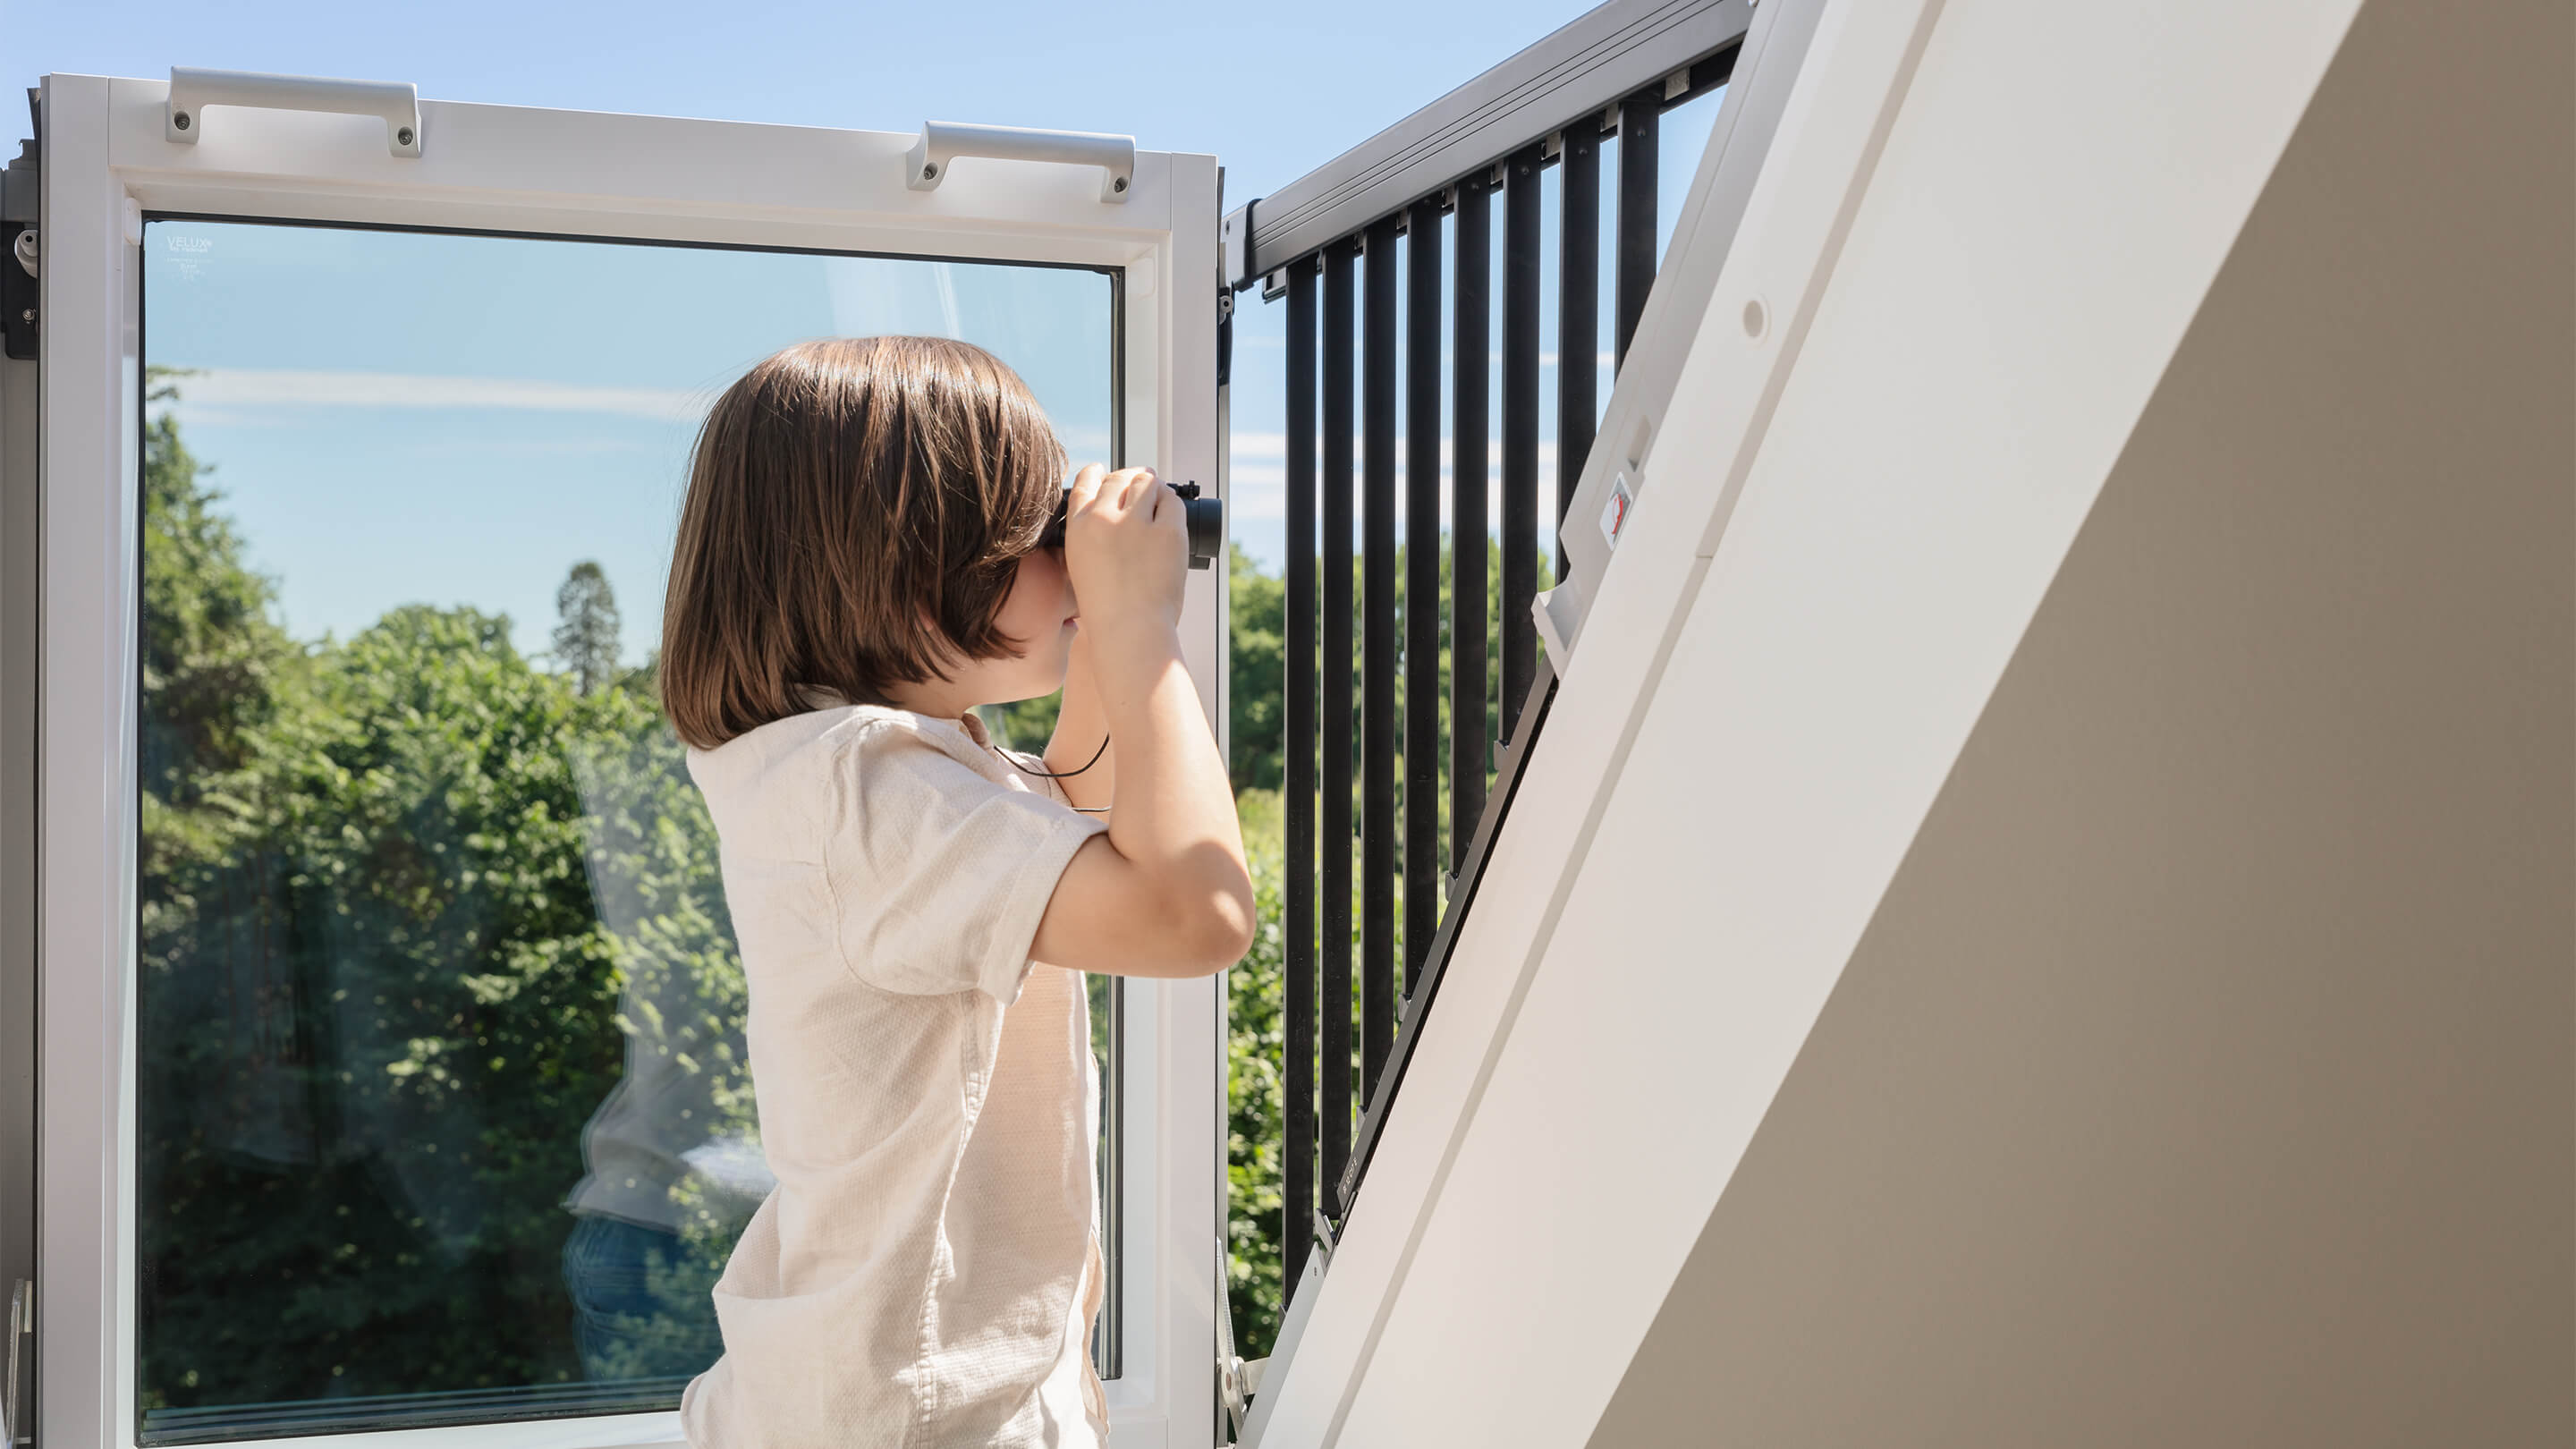 Kind benutzt ein Fernglas bei einem VELUX Dachflächenfenster mit Blick auf grüne Bäume.